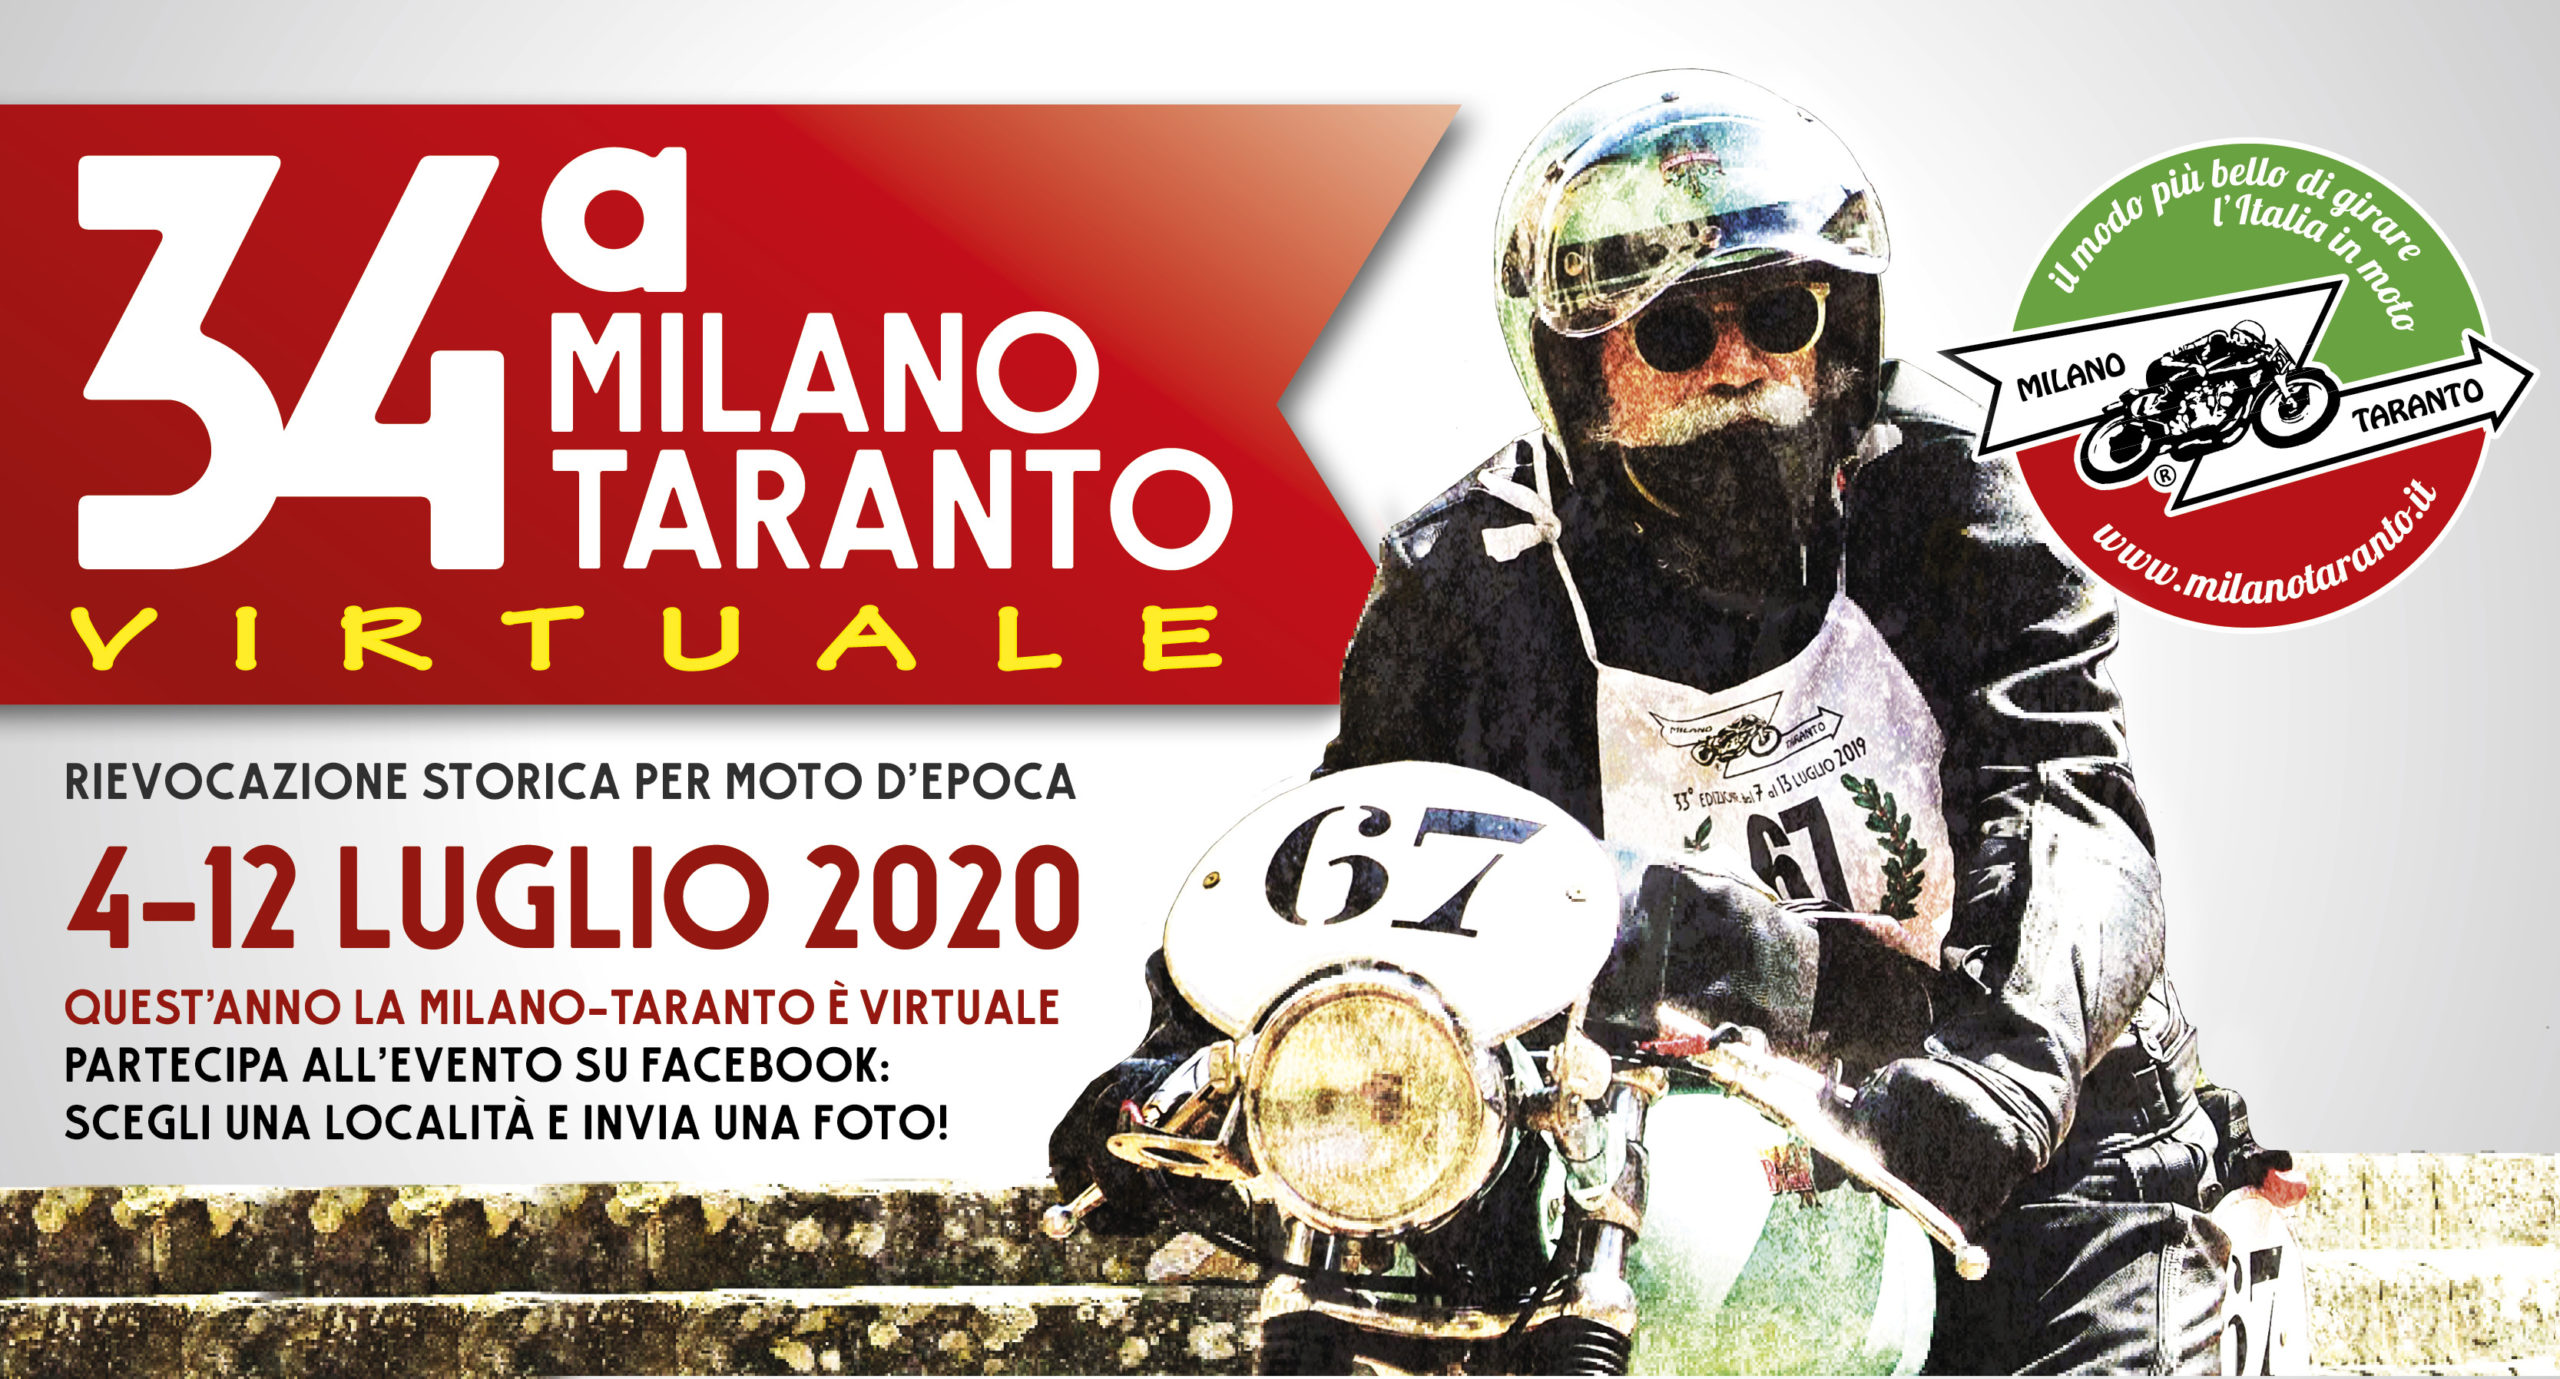 Milano-Taranto, 34esima edizione tutta virtuale. La maratona per moto d’epoca non si ferma: l’evento si sposta su Facebook